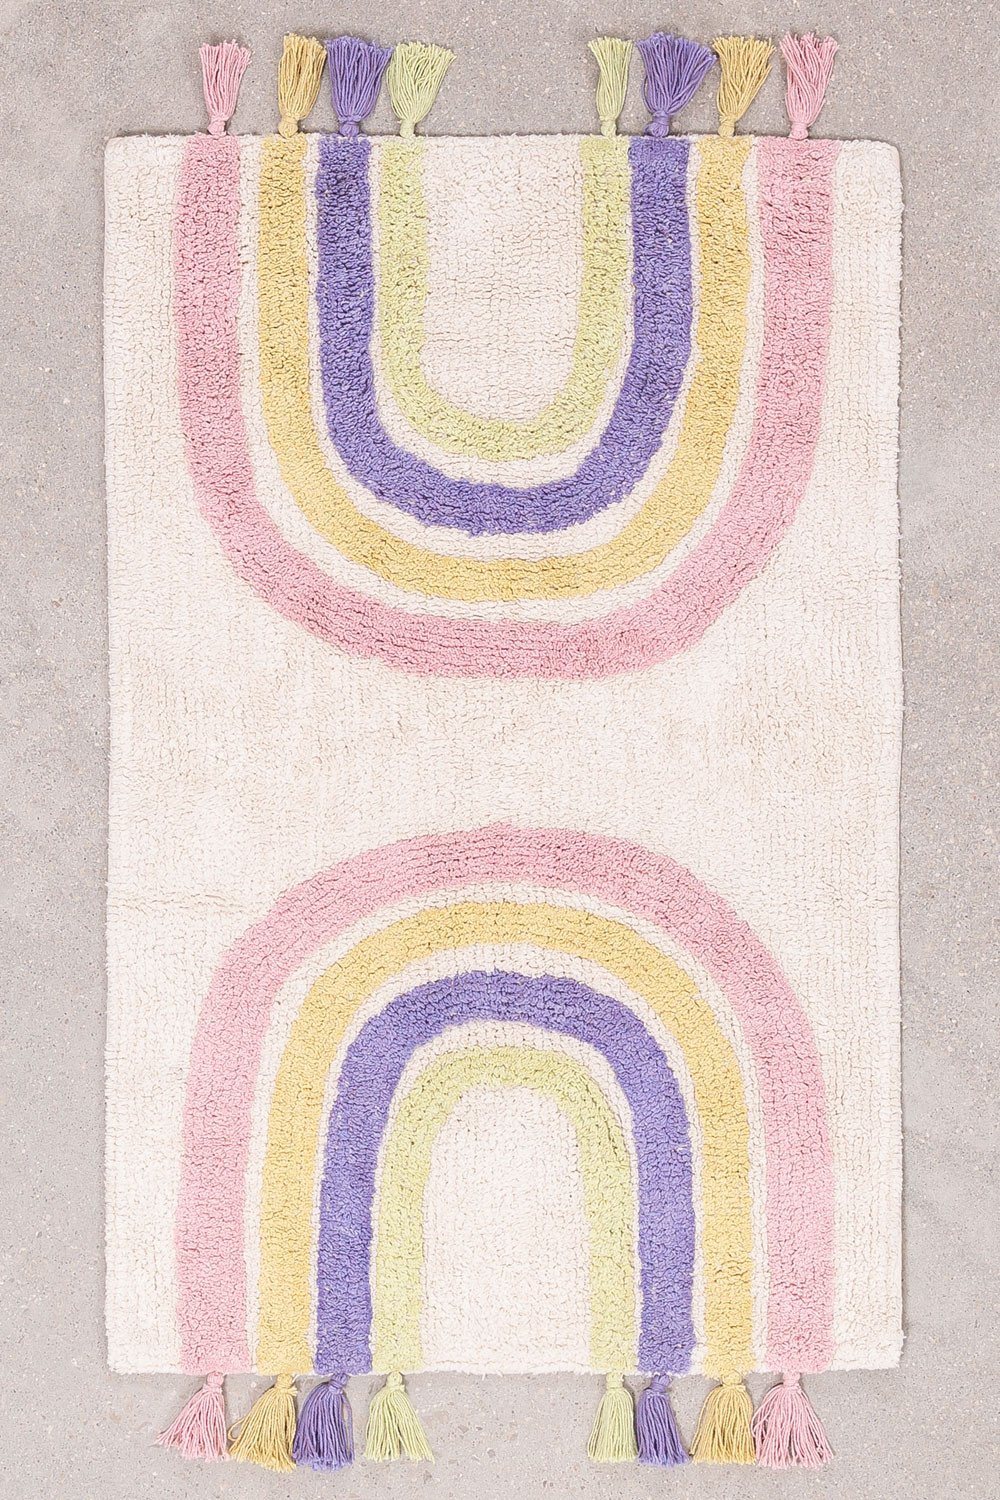 Tappeto in cotone (51,5x92,5 cm) Arki, immagine della galleria 1